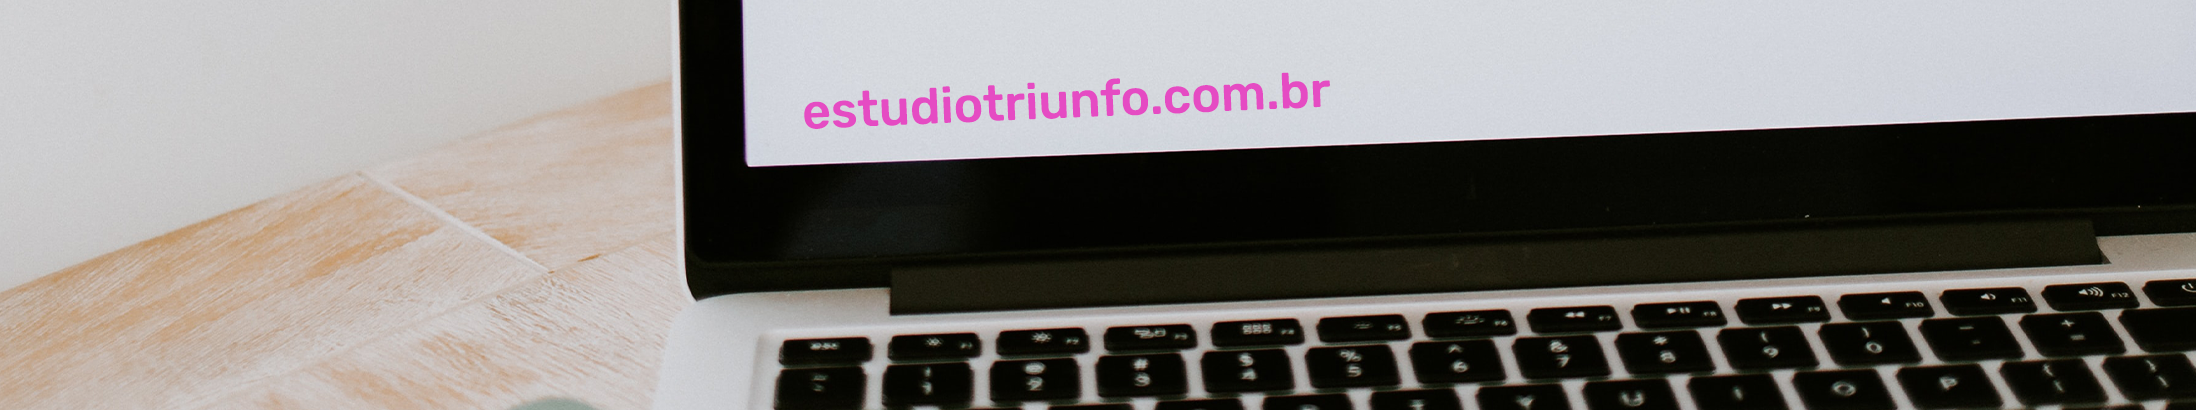 Triunfo Estudio Digital's profile banner